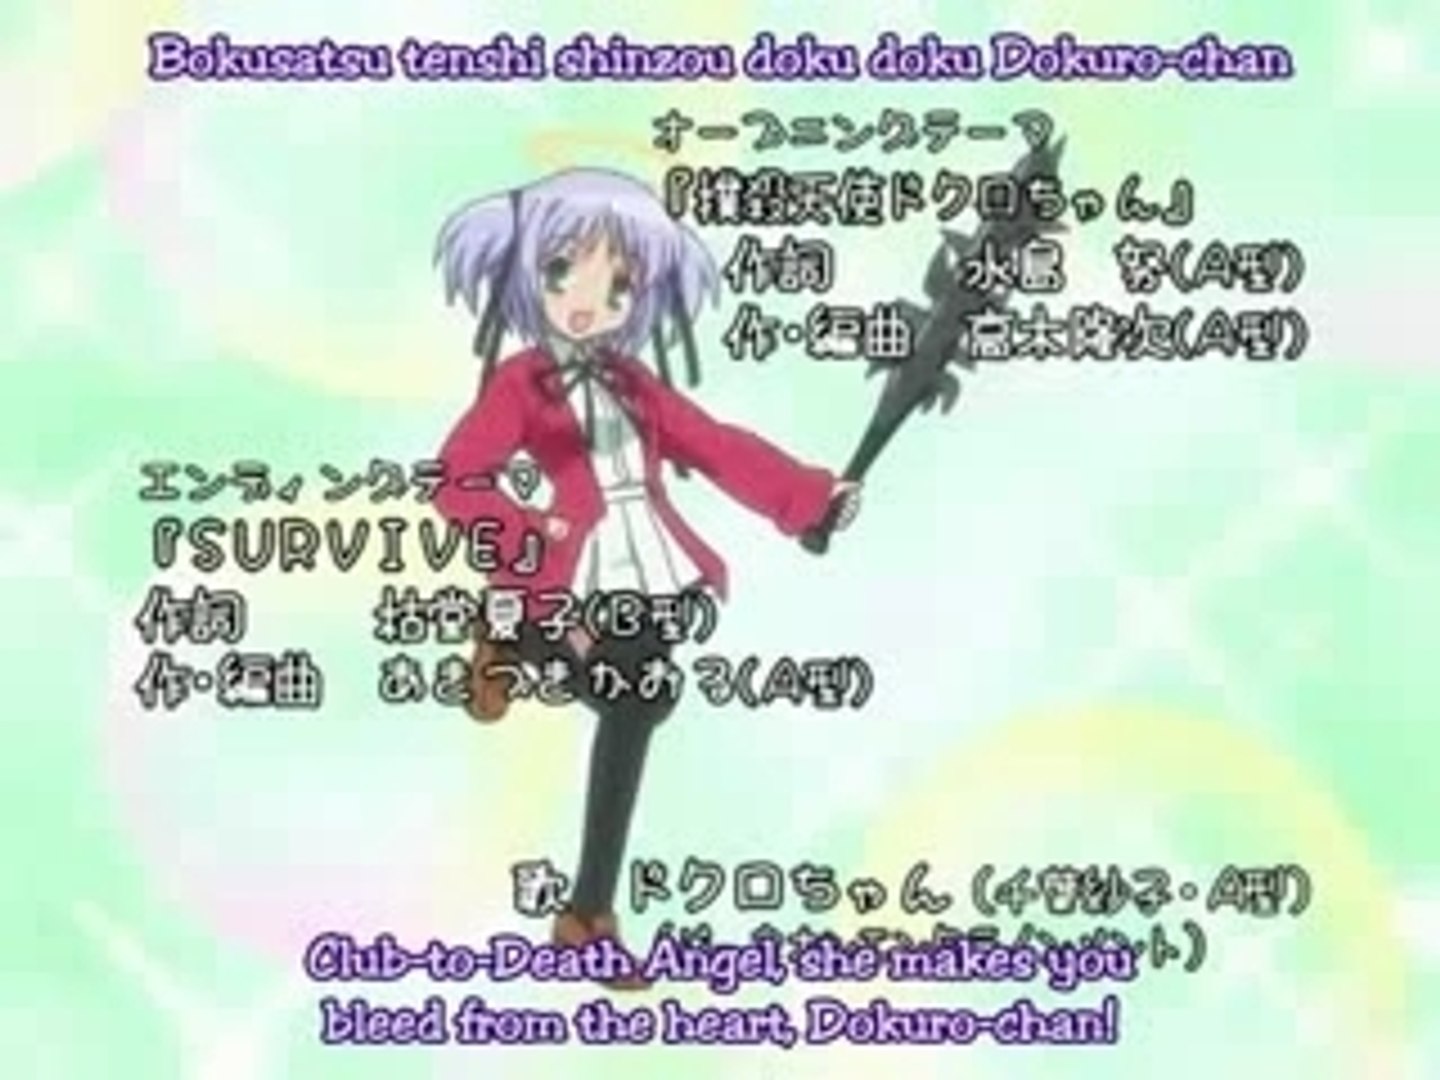 Caneca Anime - Bokusatsu Tenshi Dokuro-chan Goyabu - Xicara